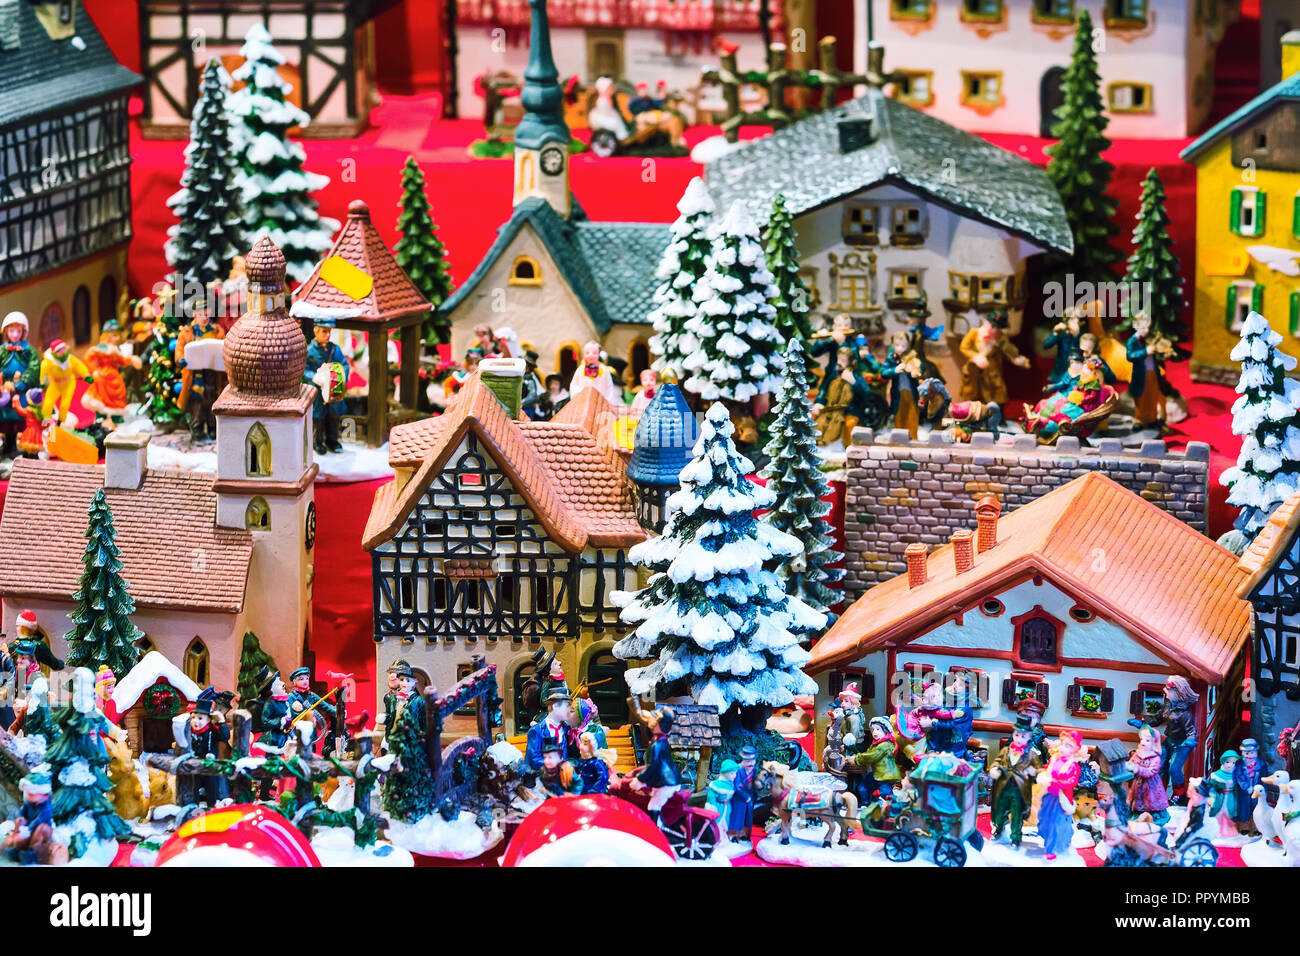 Europäische Weihnachtsmarkt Messe mit verschiedenen traditionellen Geschenke  in Nürnberg, Deutschland Stockfotografie - Alamy